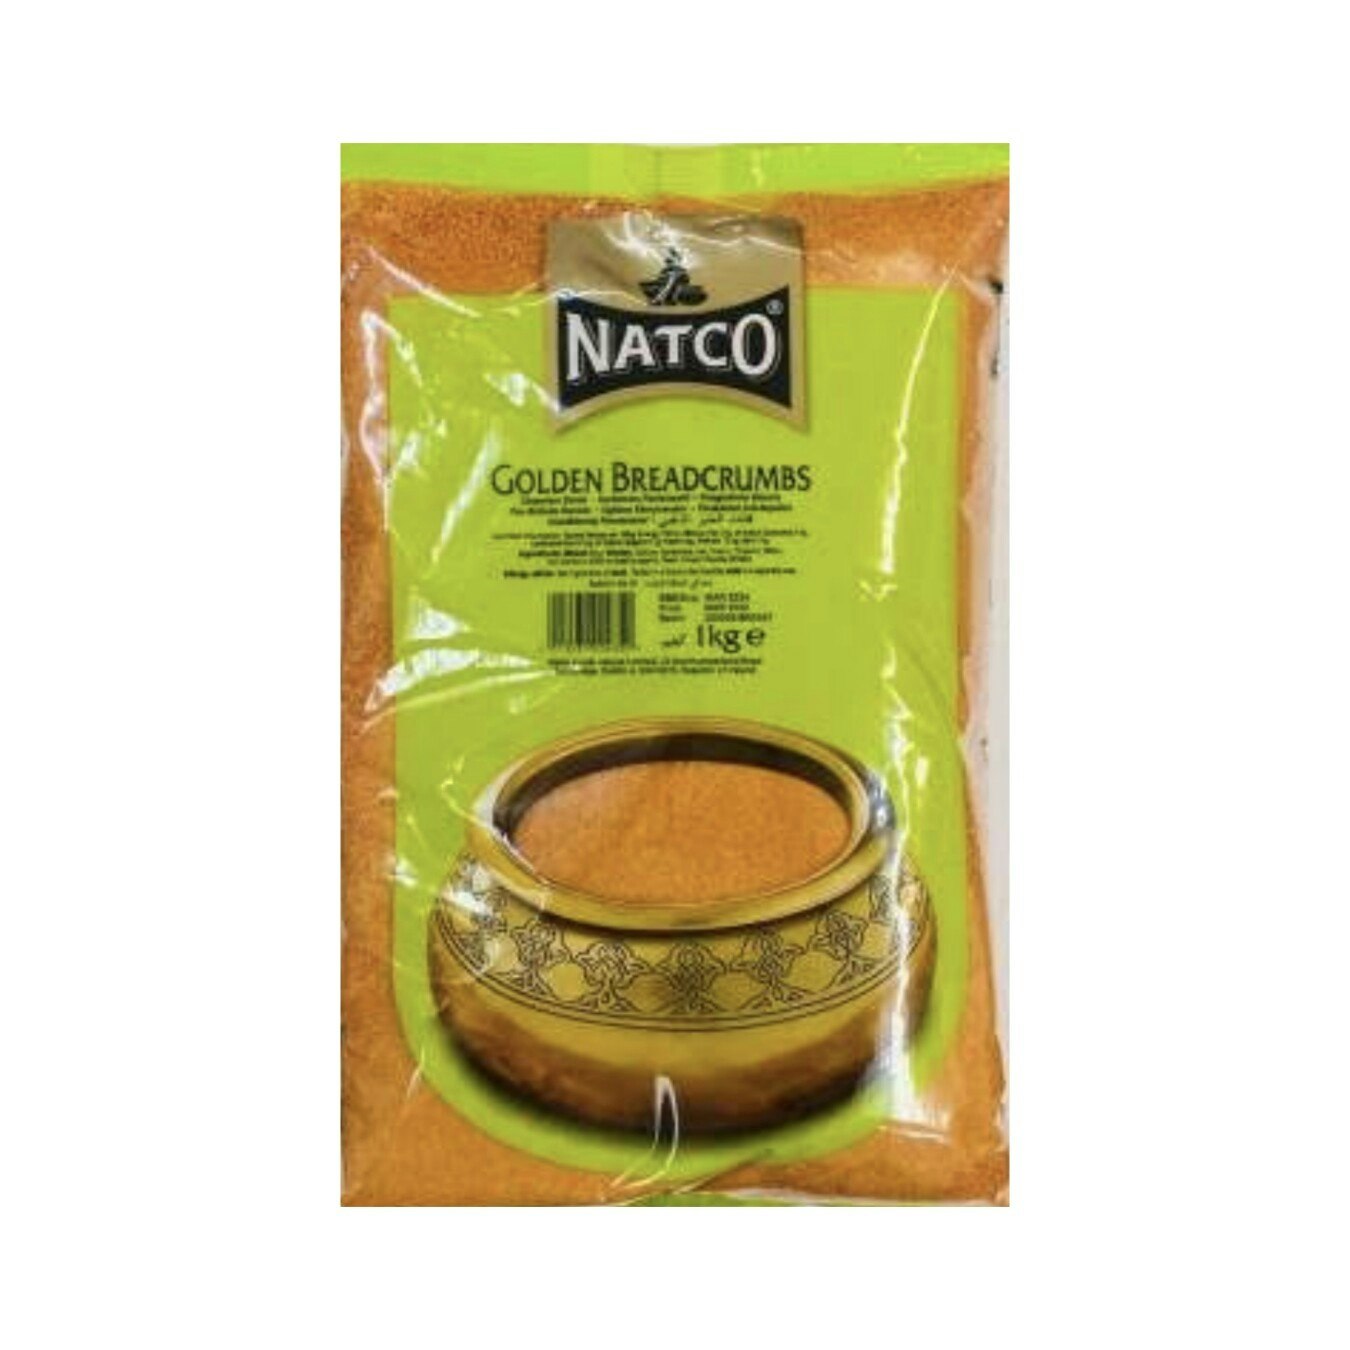 Golden Bread Crumbs 1 Kg (Natco)